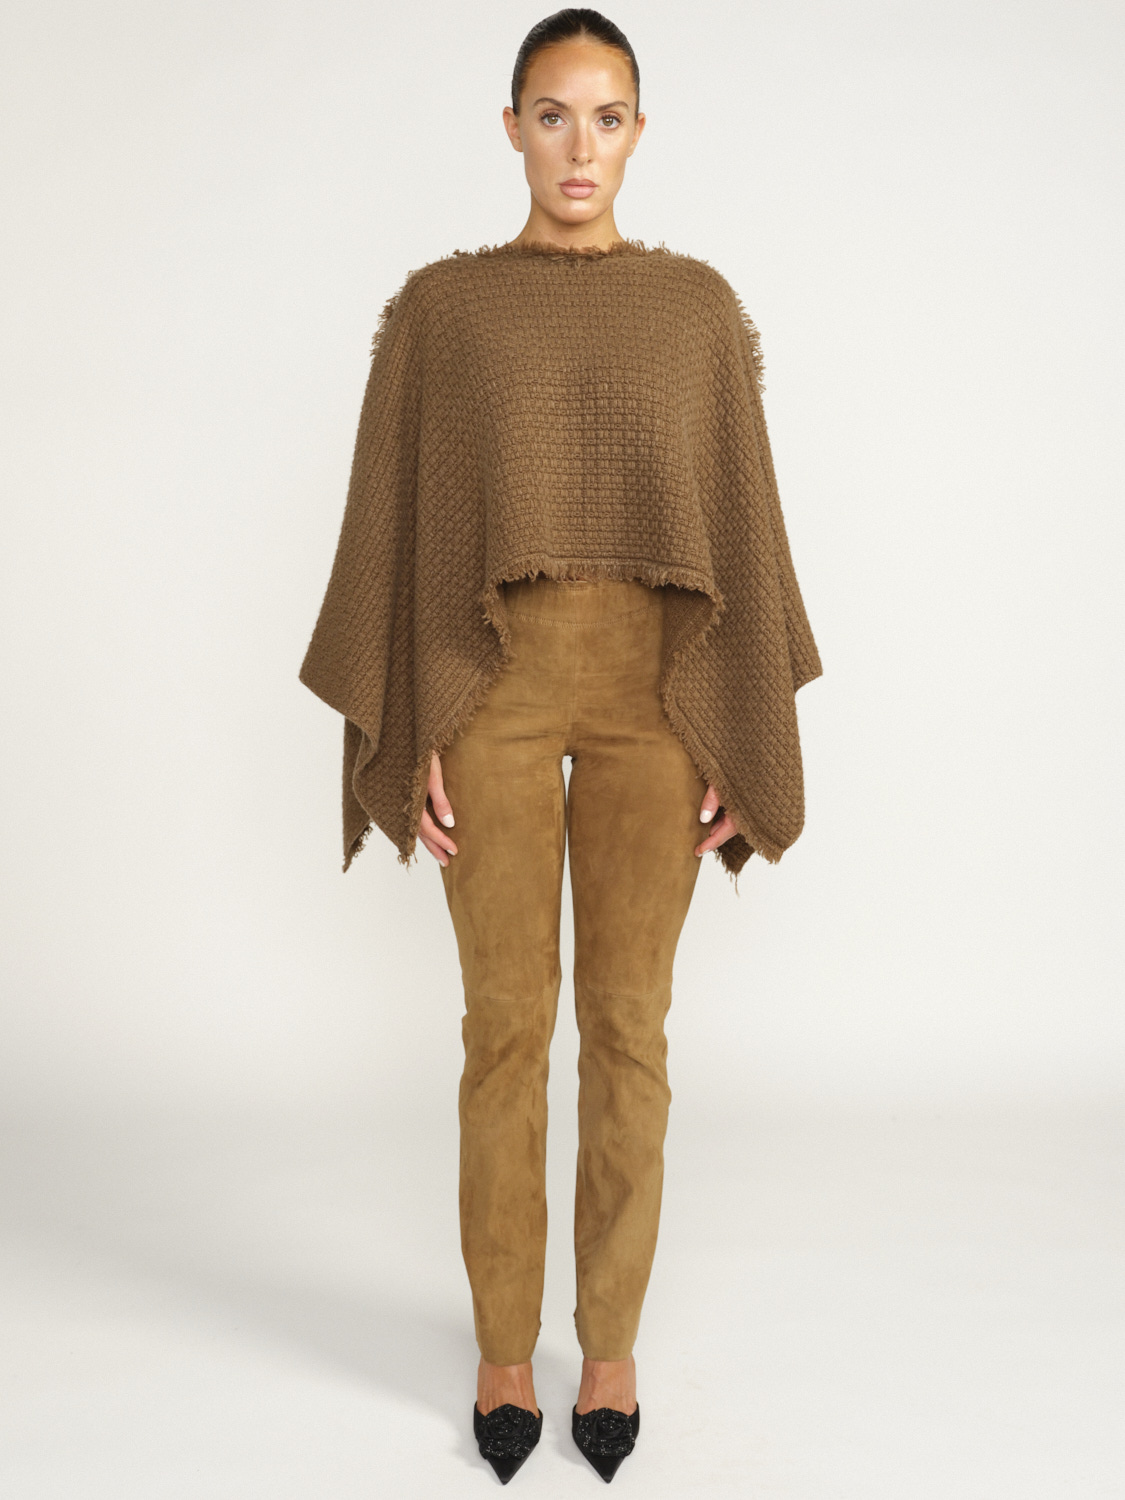 Iris von Arnim Xavia - Cape in cashmere with fringed edge brown One Size